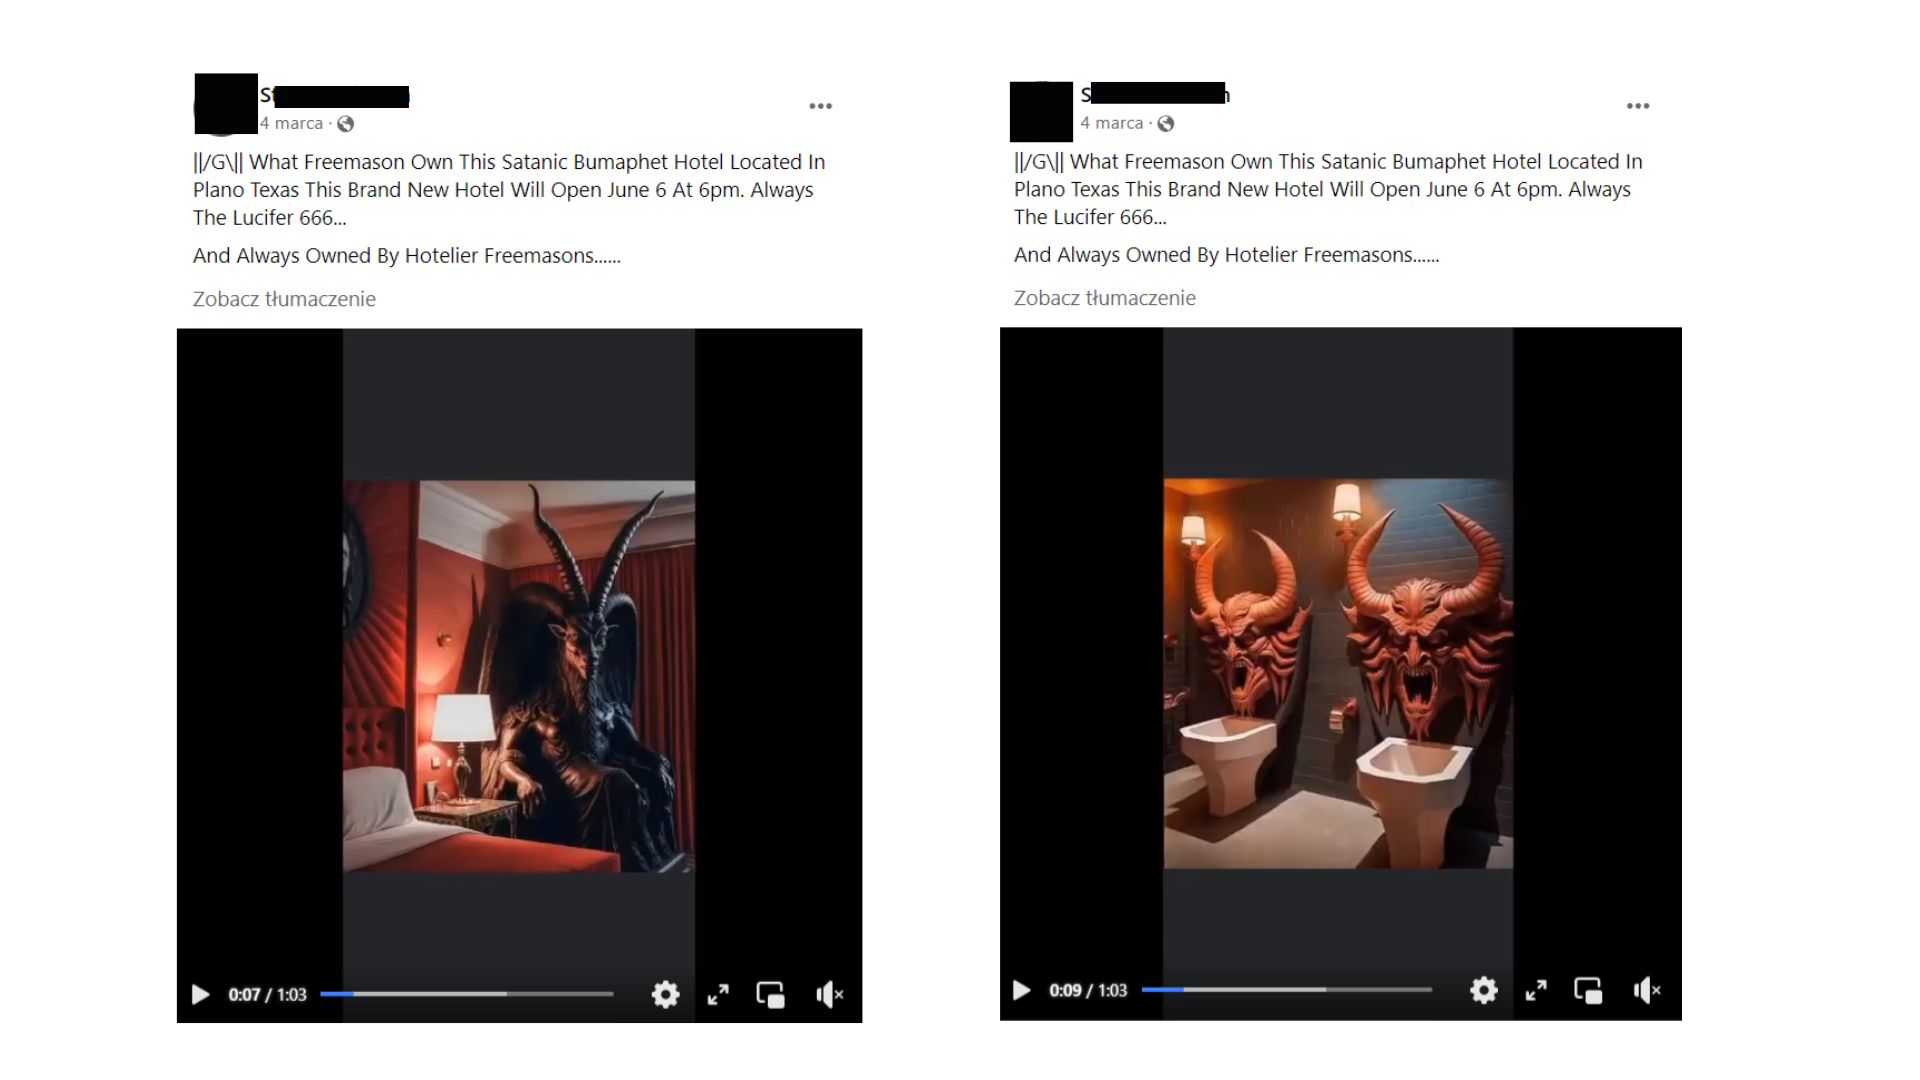 Zrzut ekranu – wpis na Facebooku, który przedstawiał różne ujęcia z rzekomego hotelu dla satanistów w Pensylwanii. Na obrazie widać posąg diabła przy łóżku oraz toaletę z twarzami demonów.